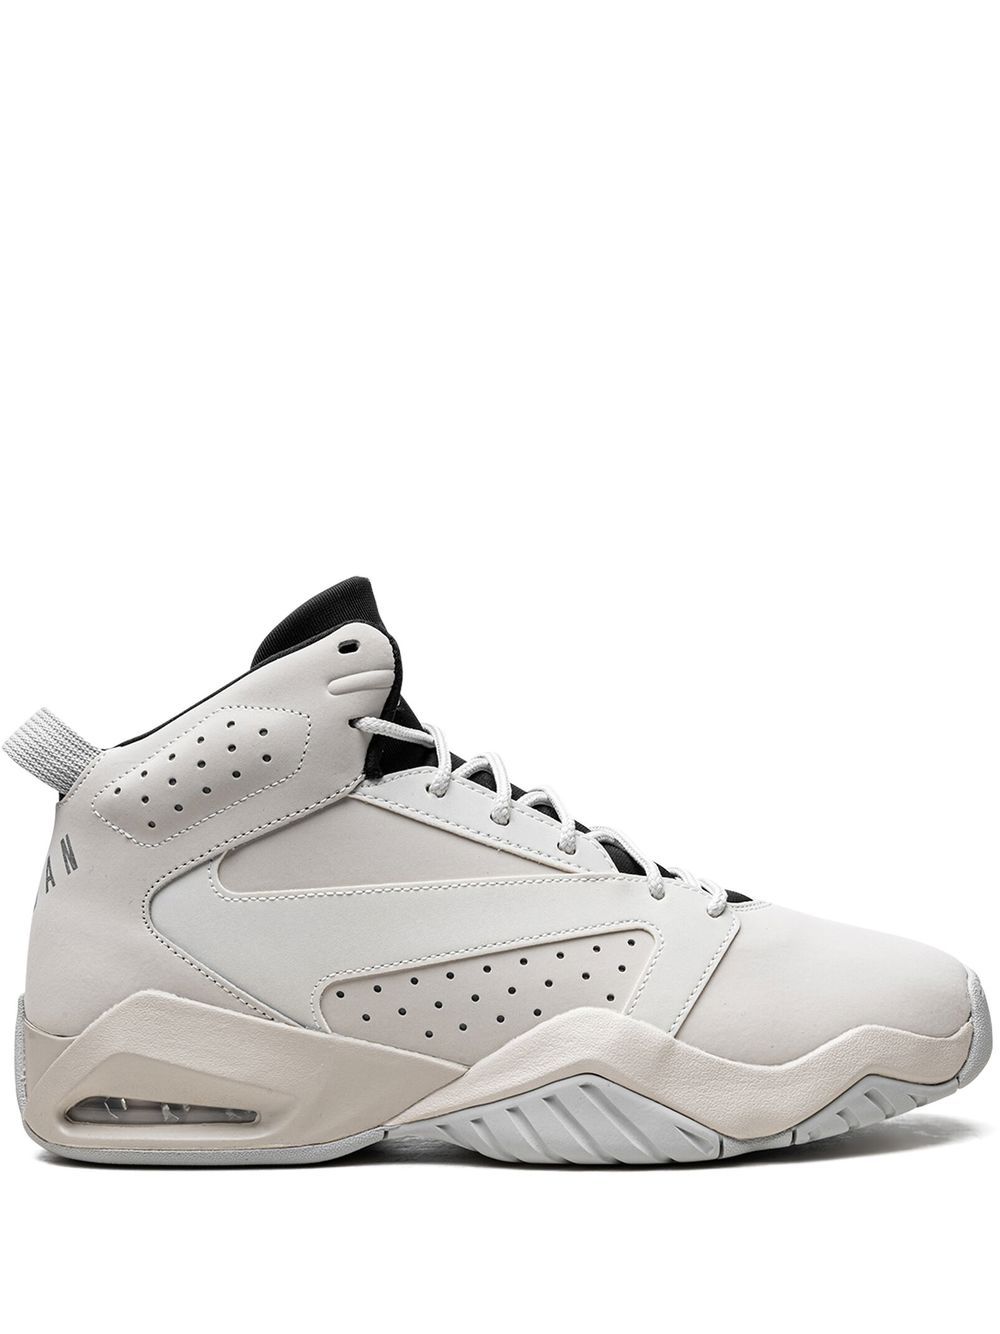 Jordan Jordan Lift Off sneakers - White